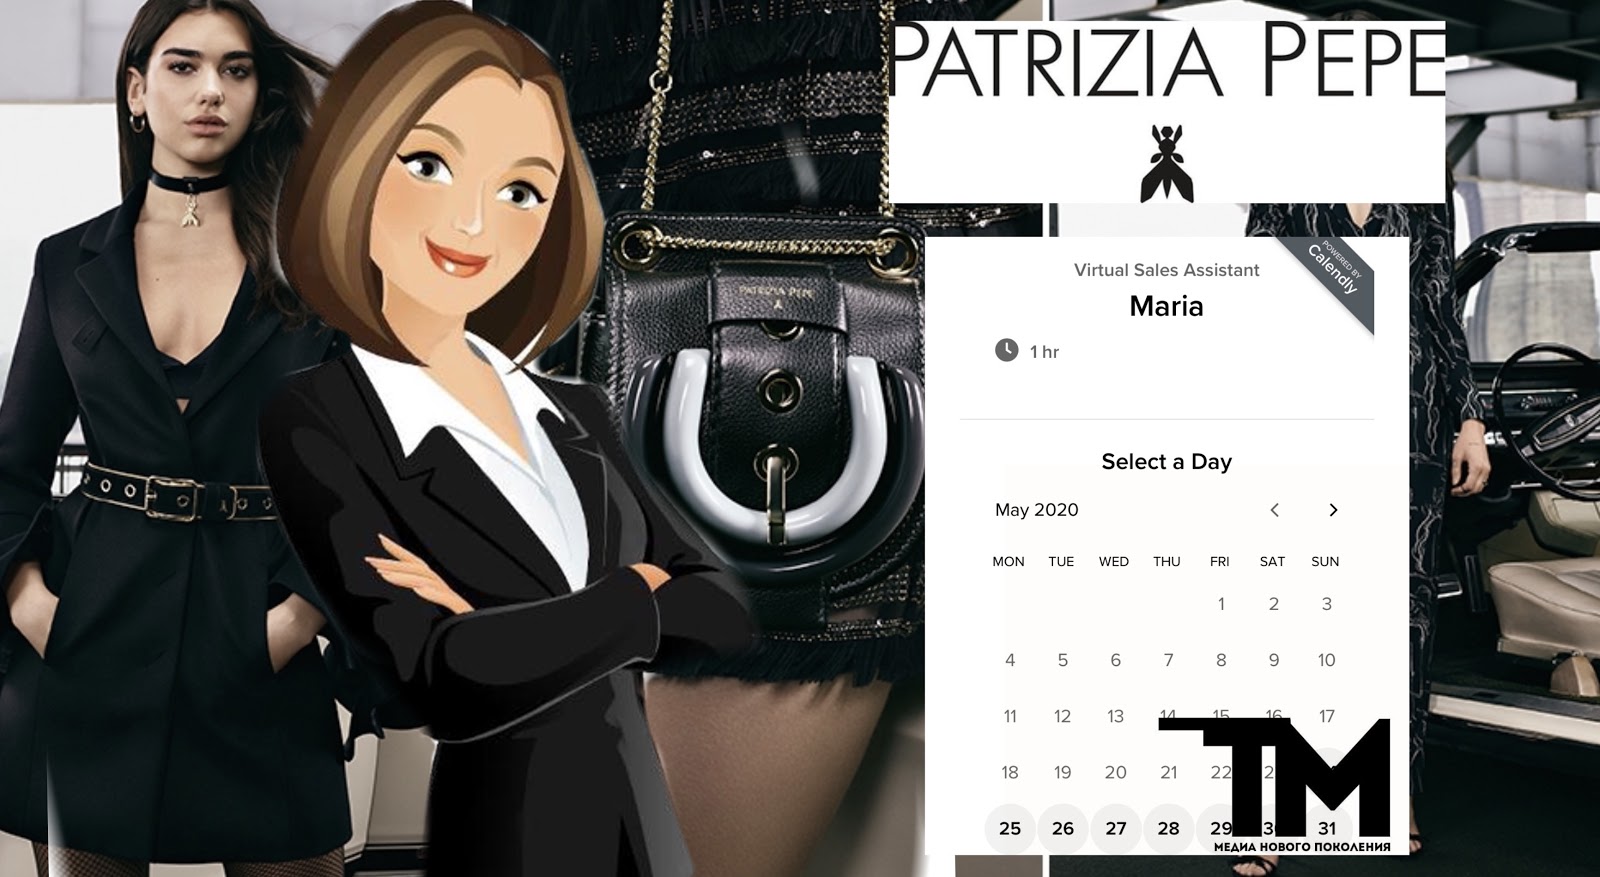 Patrizia Pepe и Google предлагают услуги виртуального шопинг-ассистента